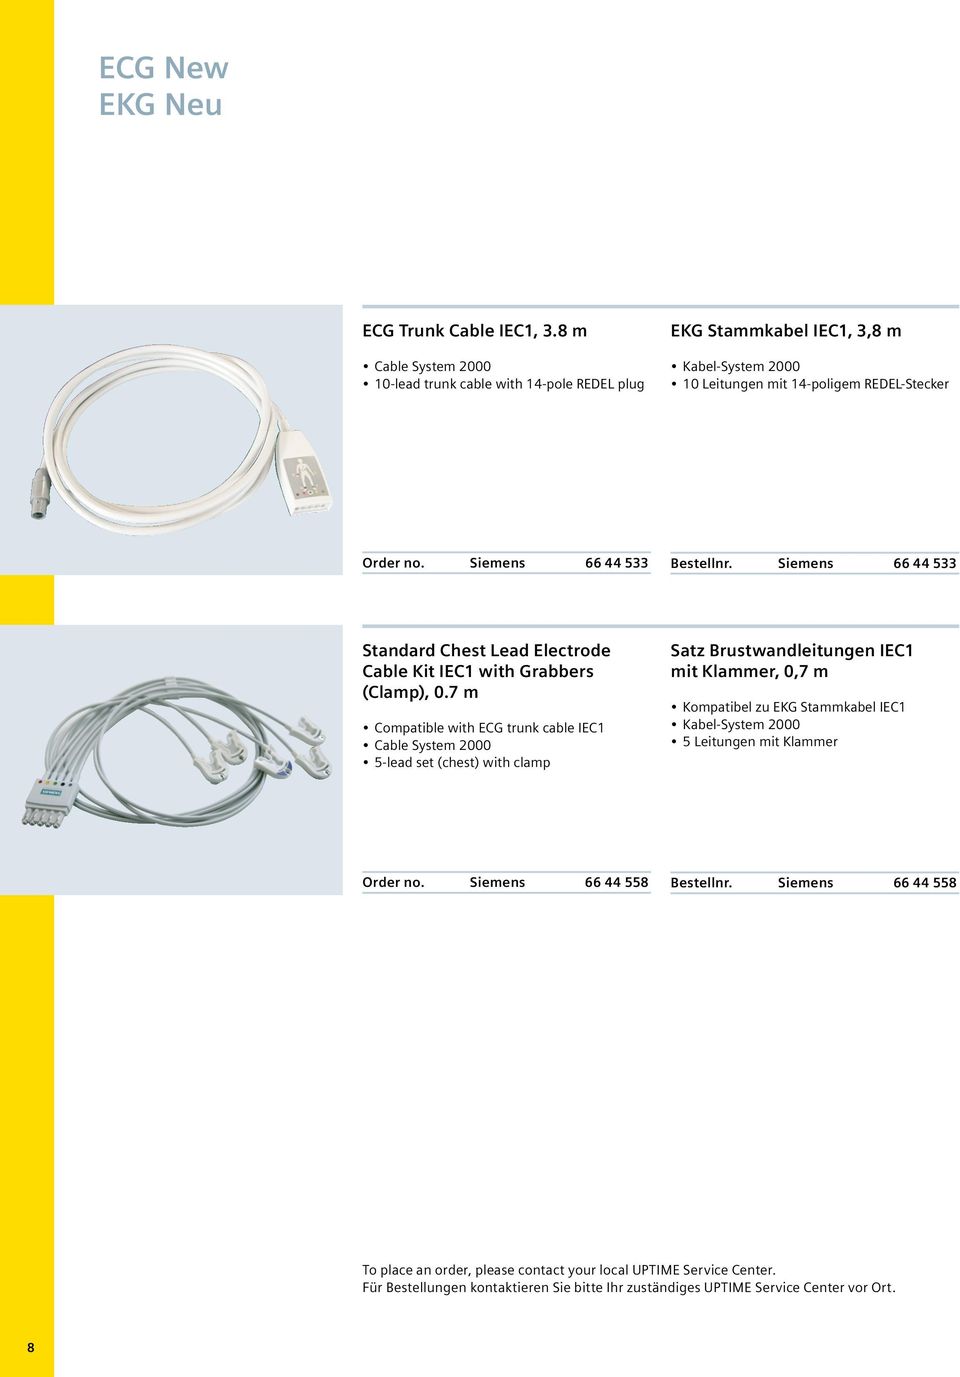 7 m Compatible with ECG trunk cable IEC1 5-lead set (chest) with clamp Satz Brustwandleitungen IEC1 mit Klammer, 0,7 m Kompatibel zu EKG Stammkabel IEC1 5 Leitungen mit